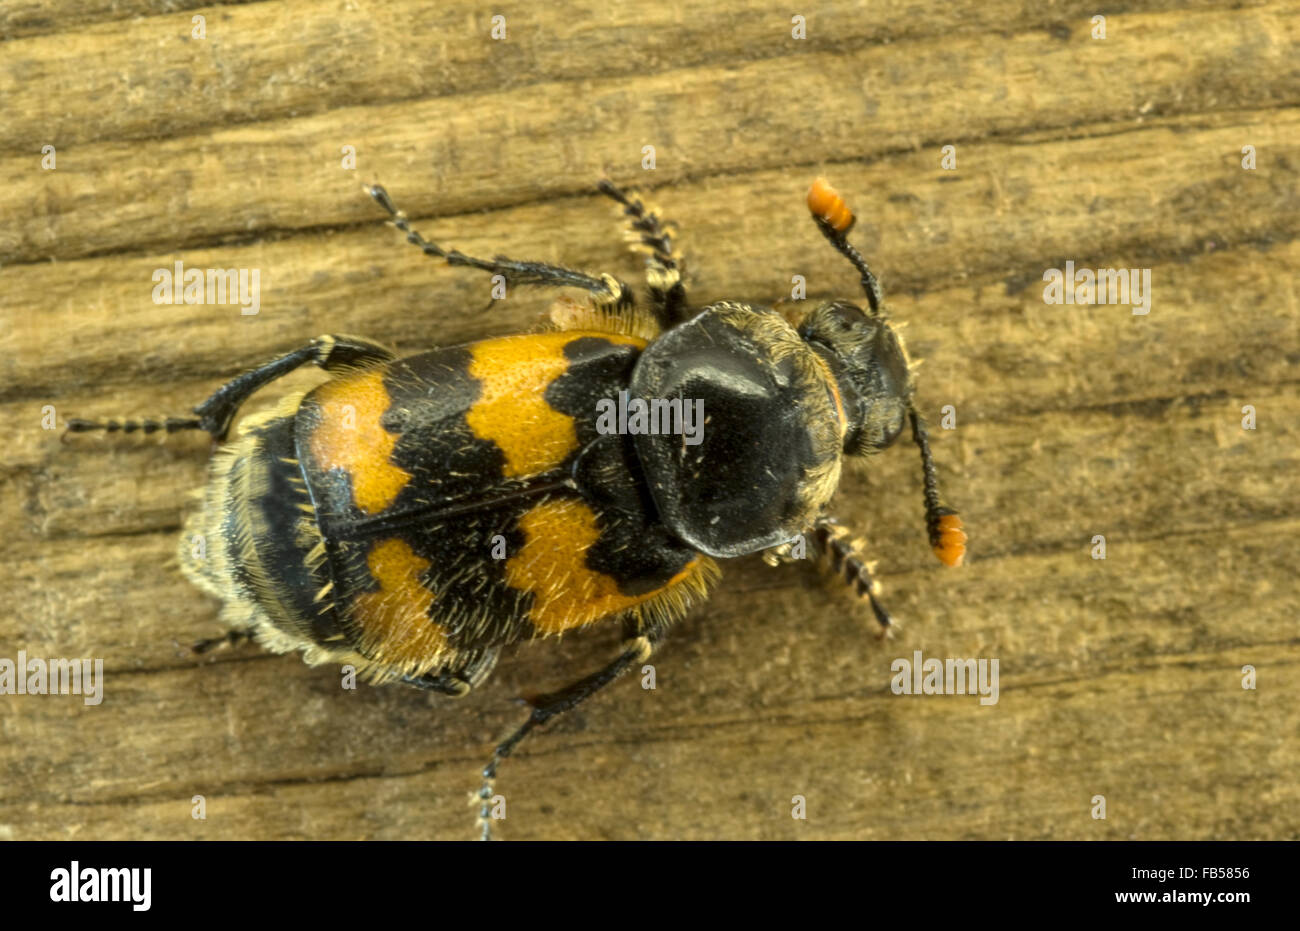 Burying beetle (Nicrophorus vespillo) Stock Photo